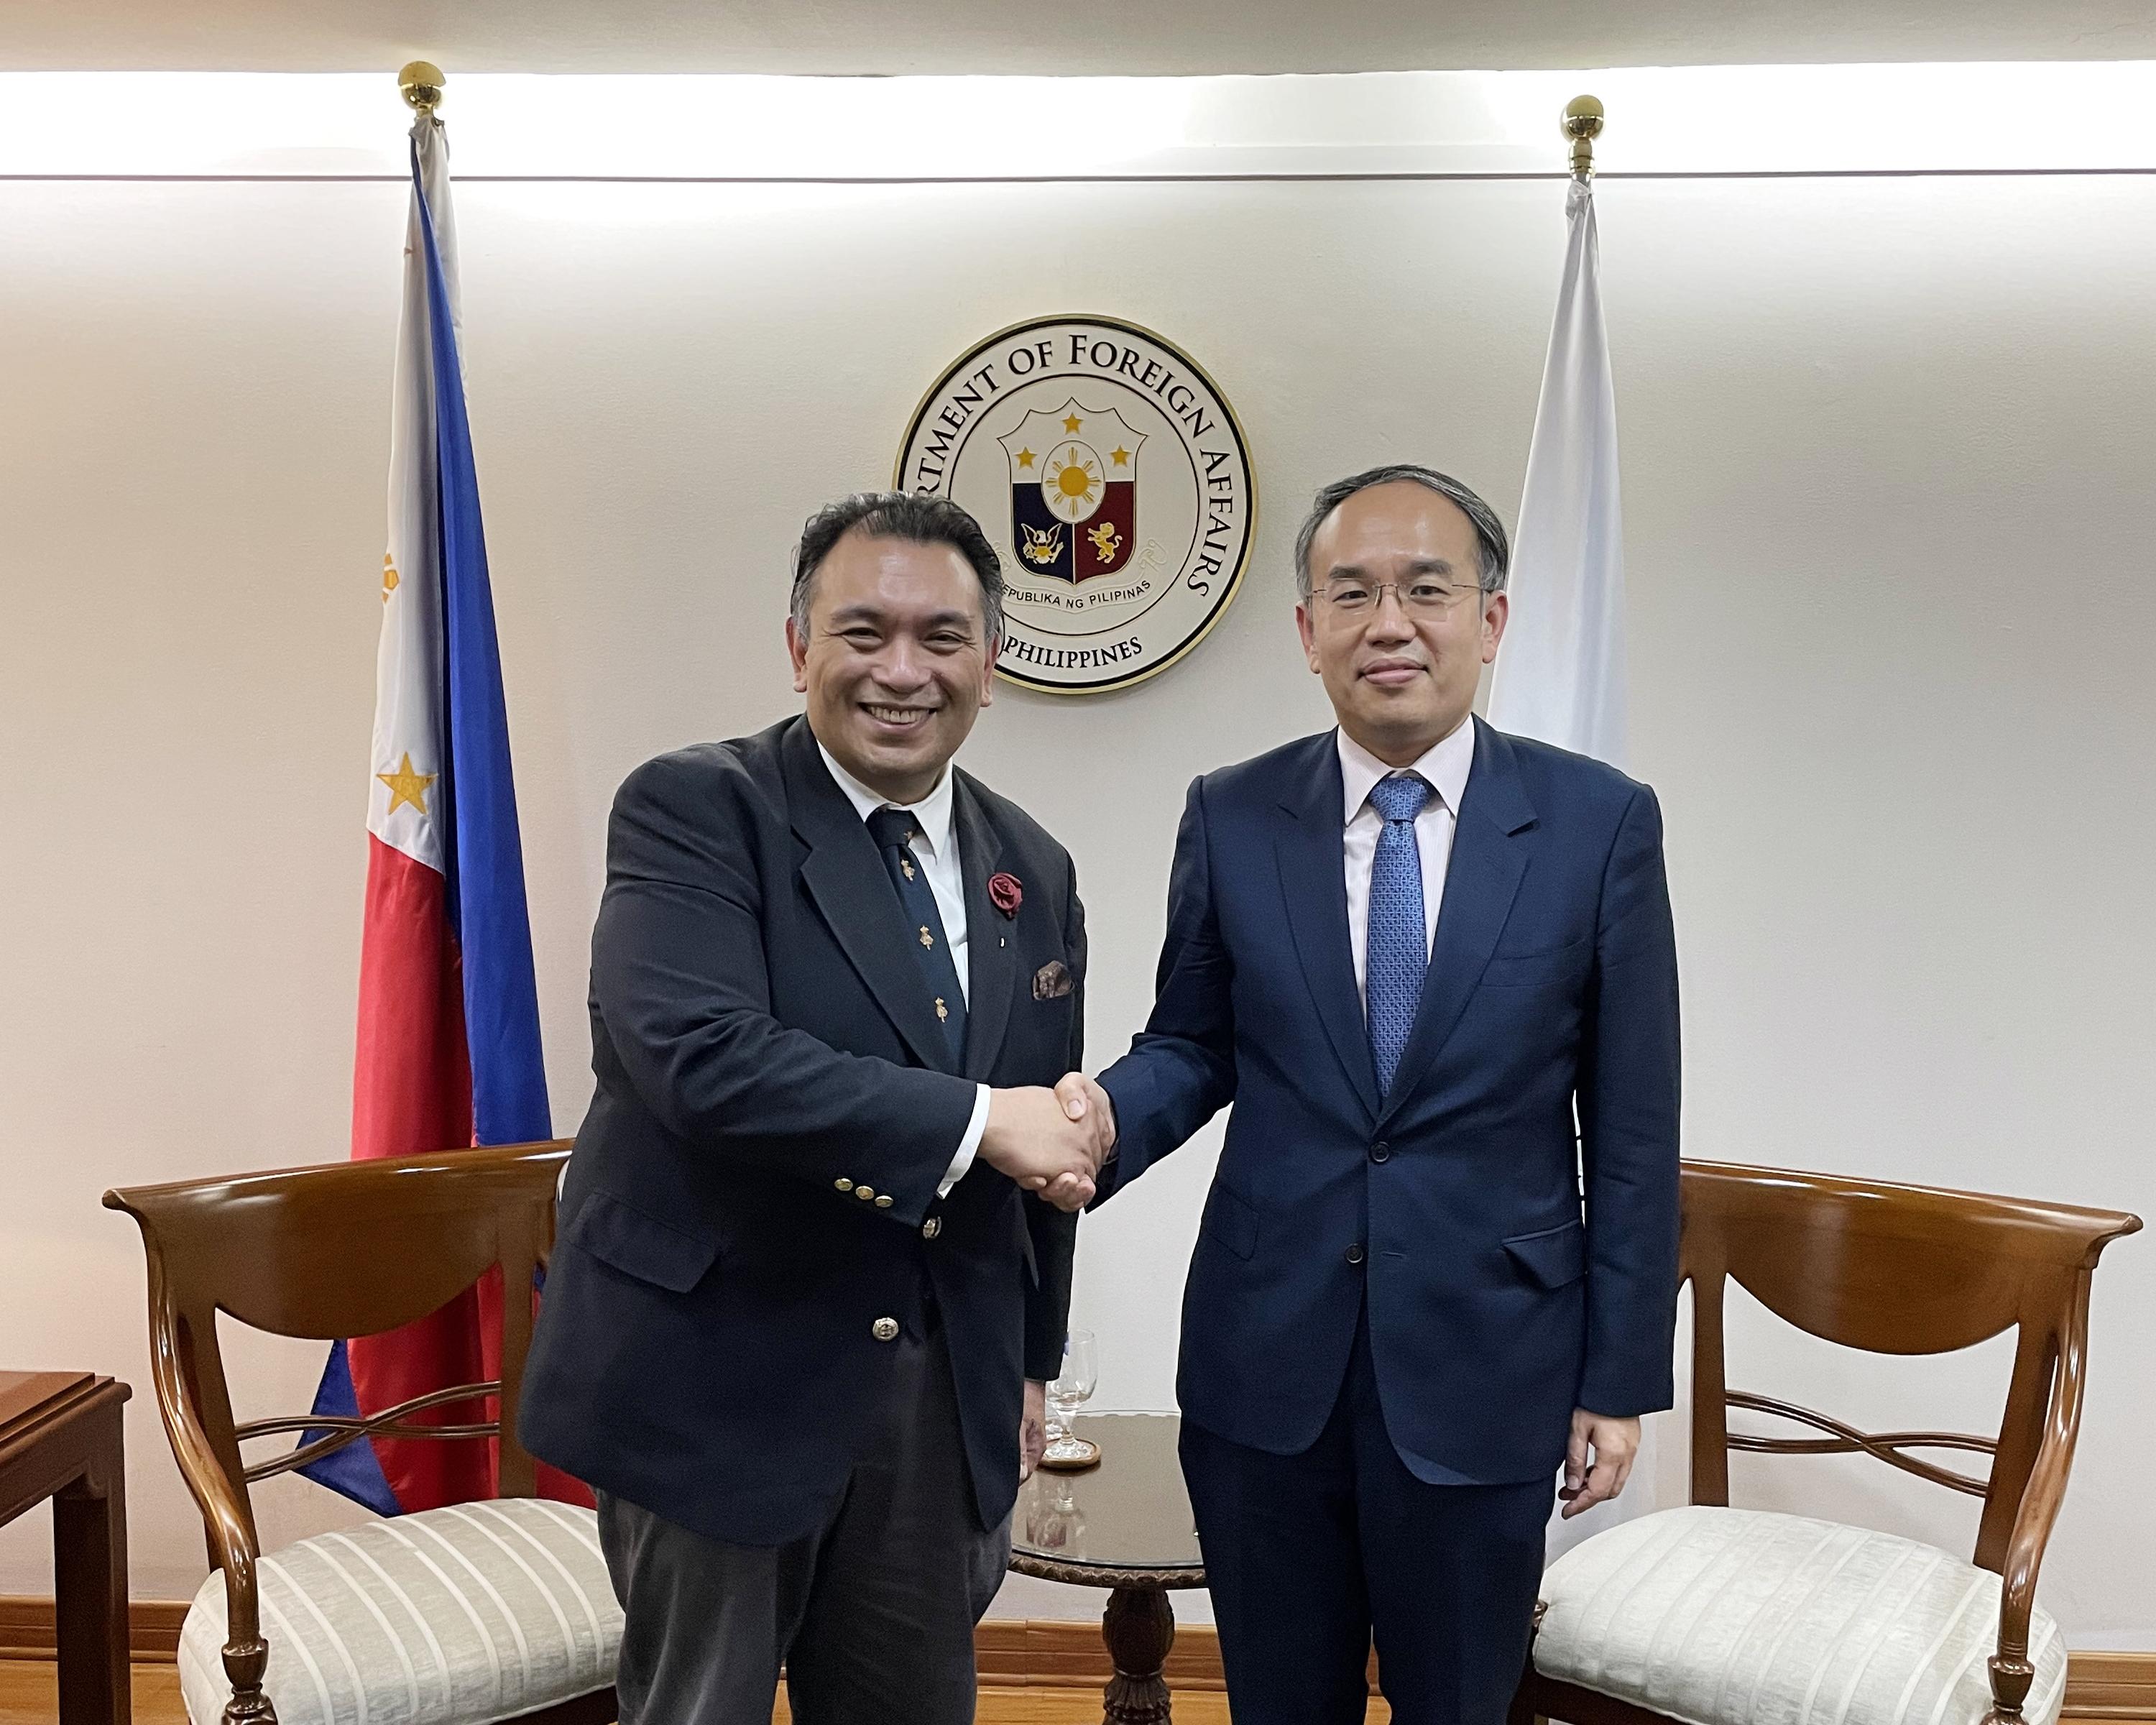 財經事務及庫務局局長許正宇今日（九月二十七日）繼續在菲律賓馬尼拉的行程。圖示許正宇（右）與菲律賓外交部副部長Jesus Domingo會面。



